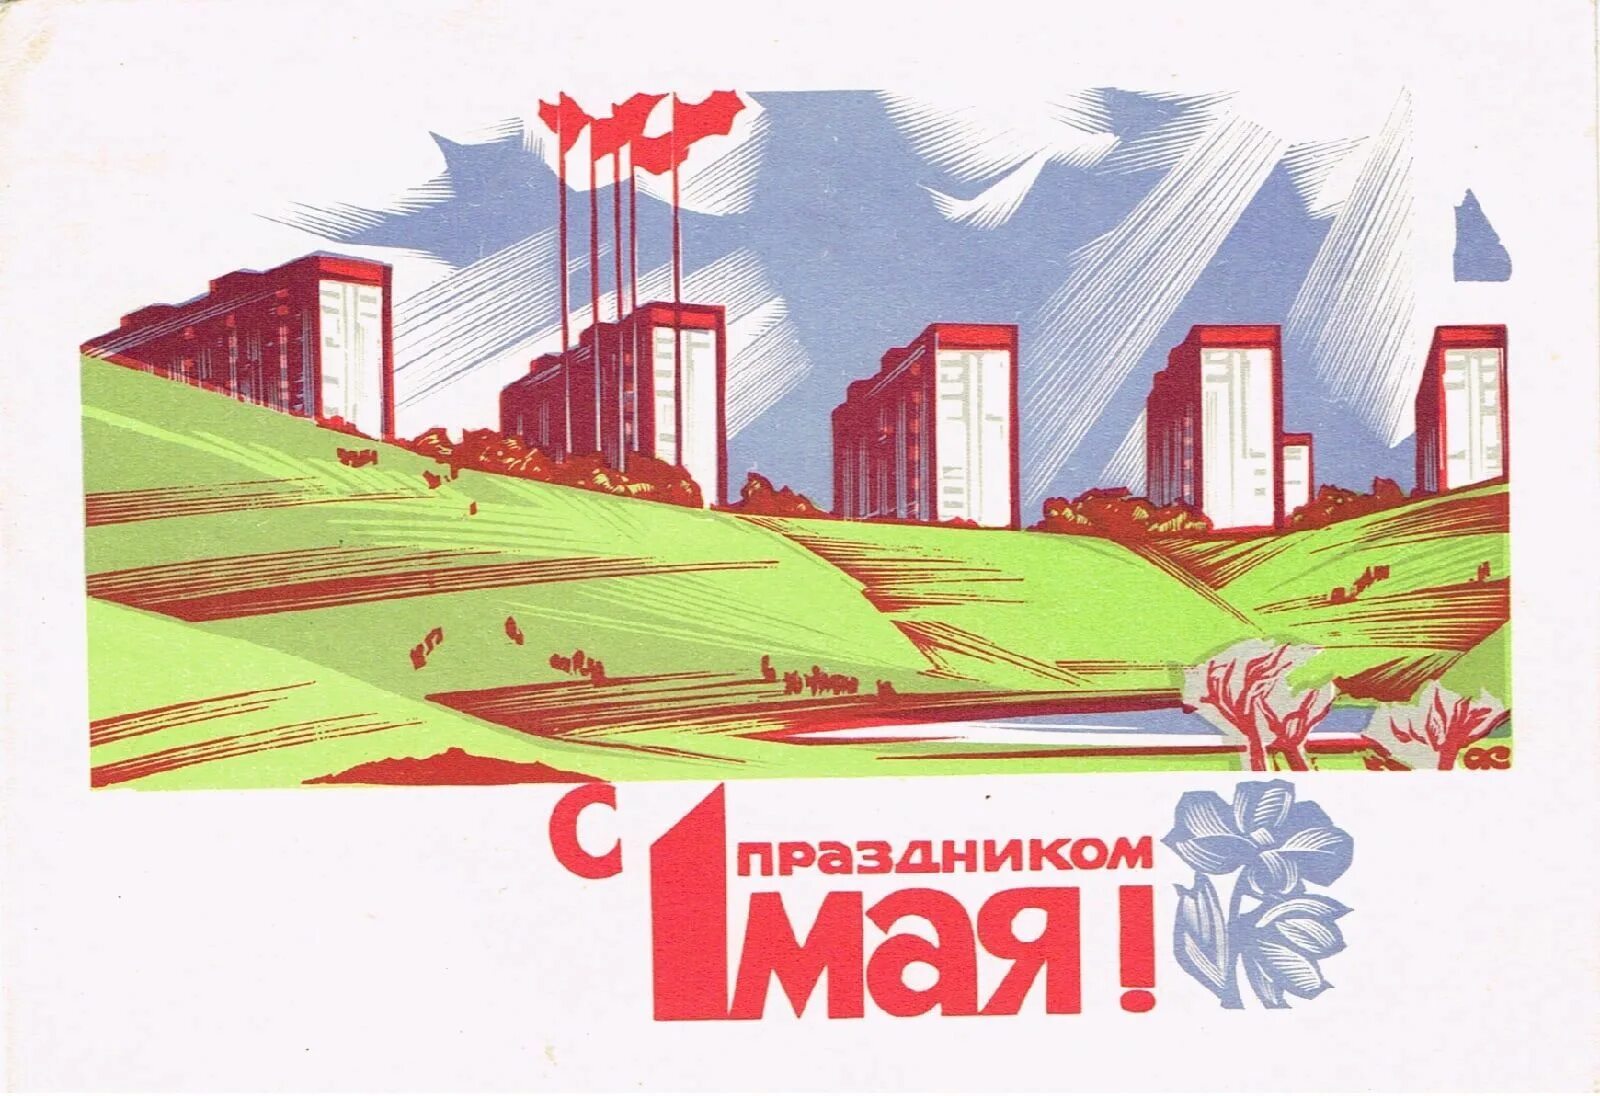 1 мая строительство. 1 Мая плакат. Первое мая советские плакаты. Мир труд май советские плакаты. 1 Мая праздник плакат.